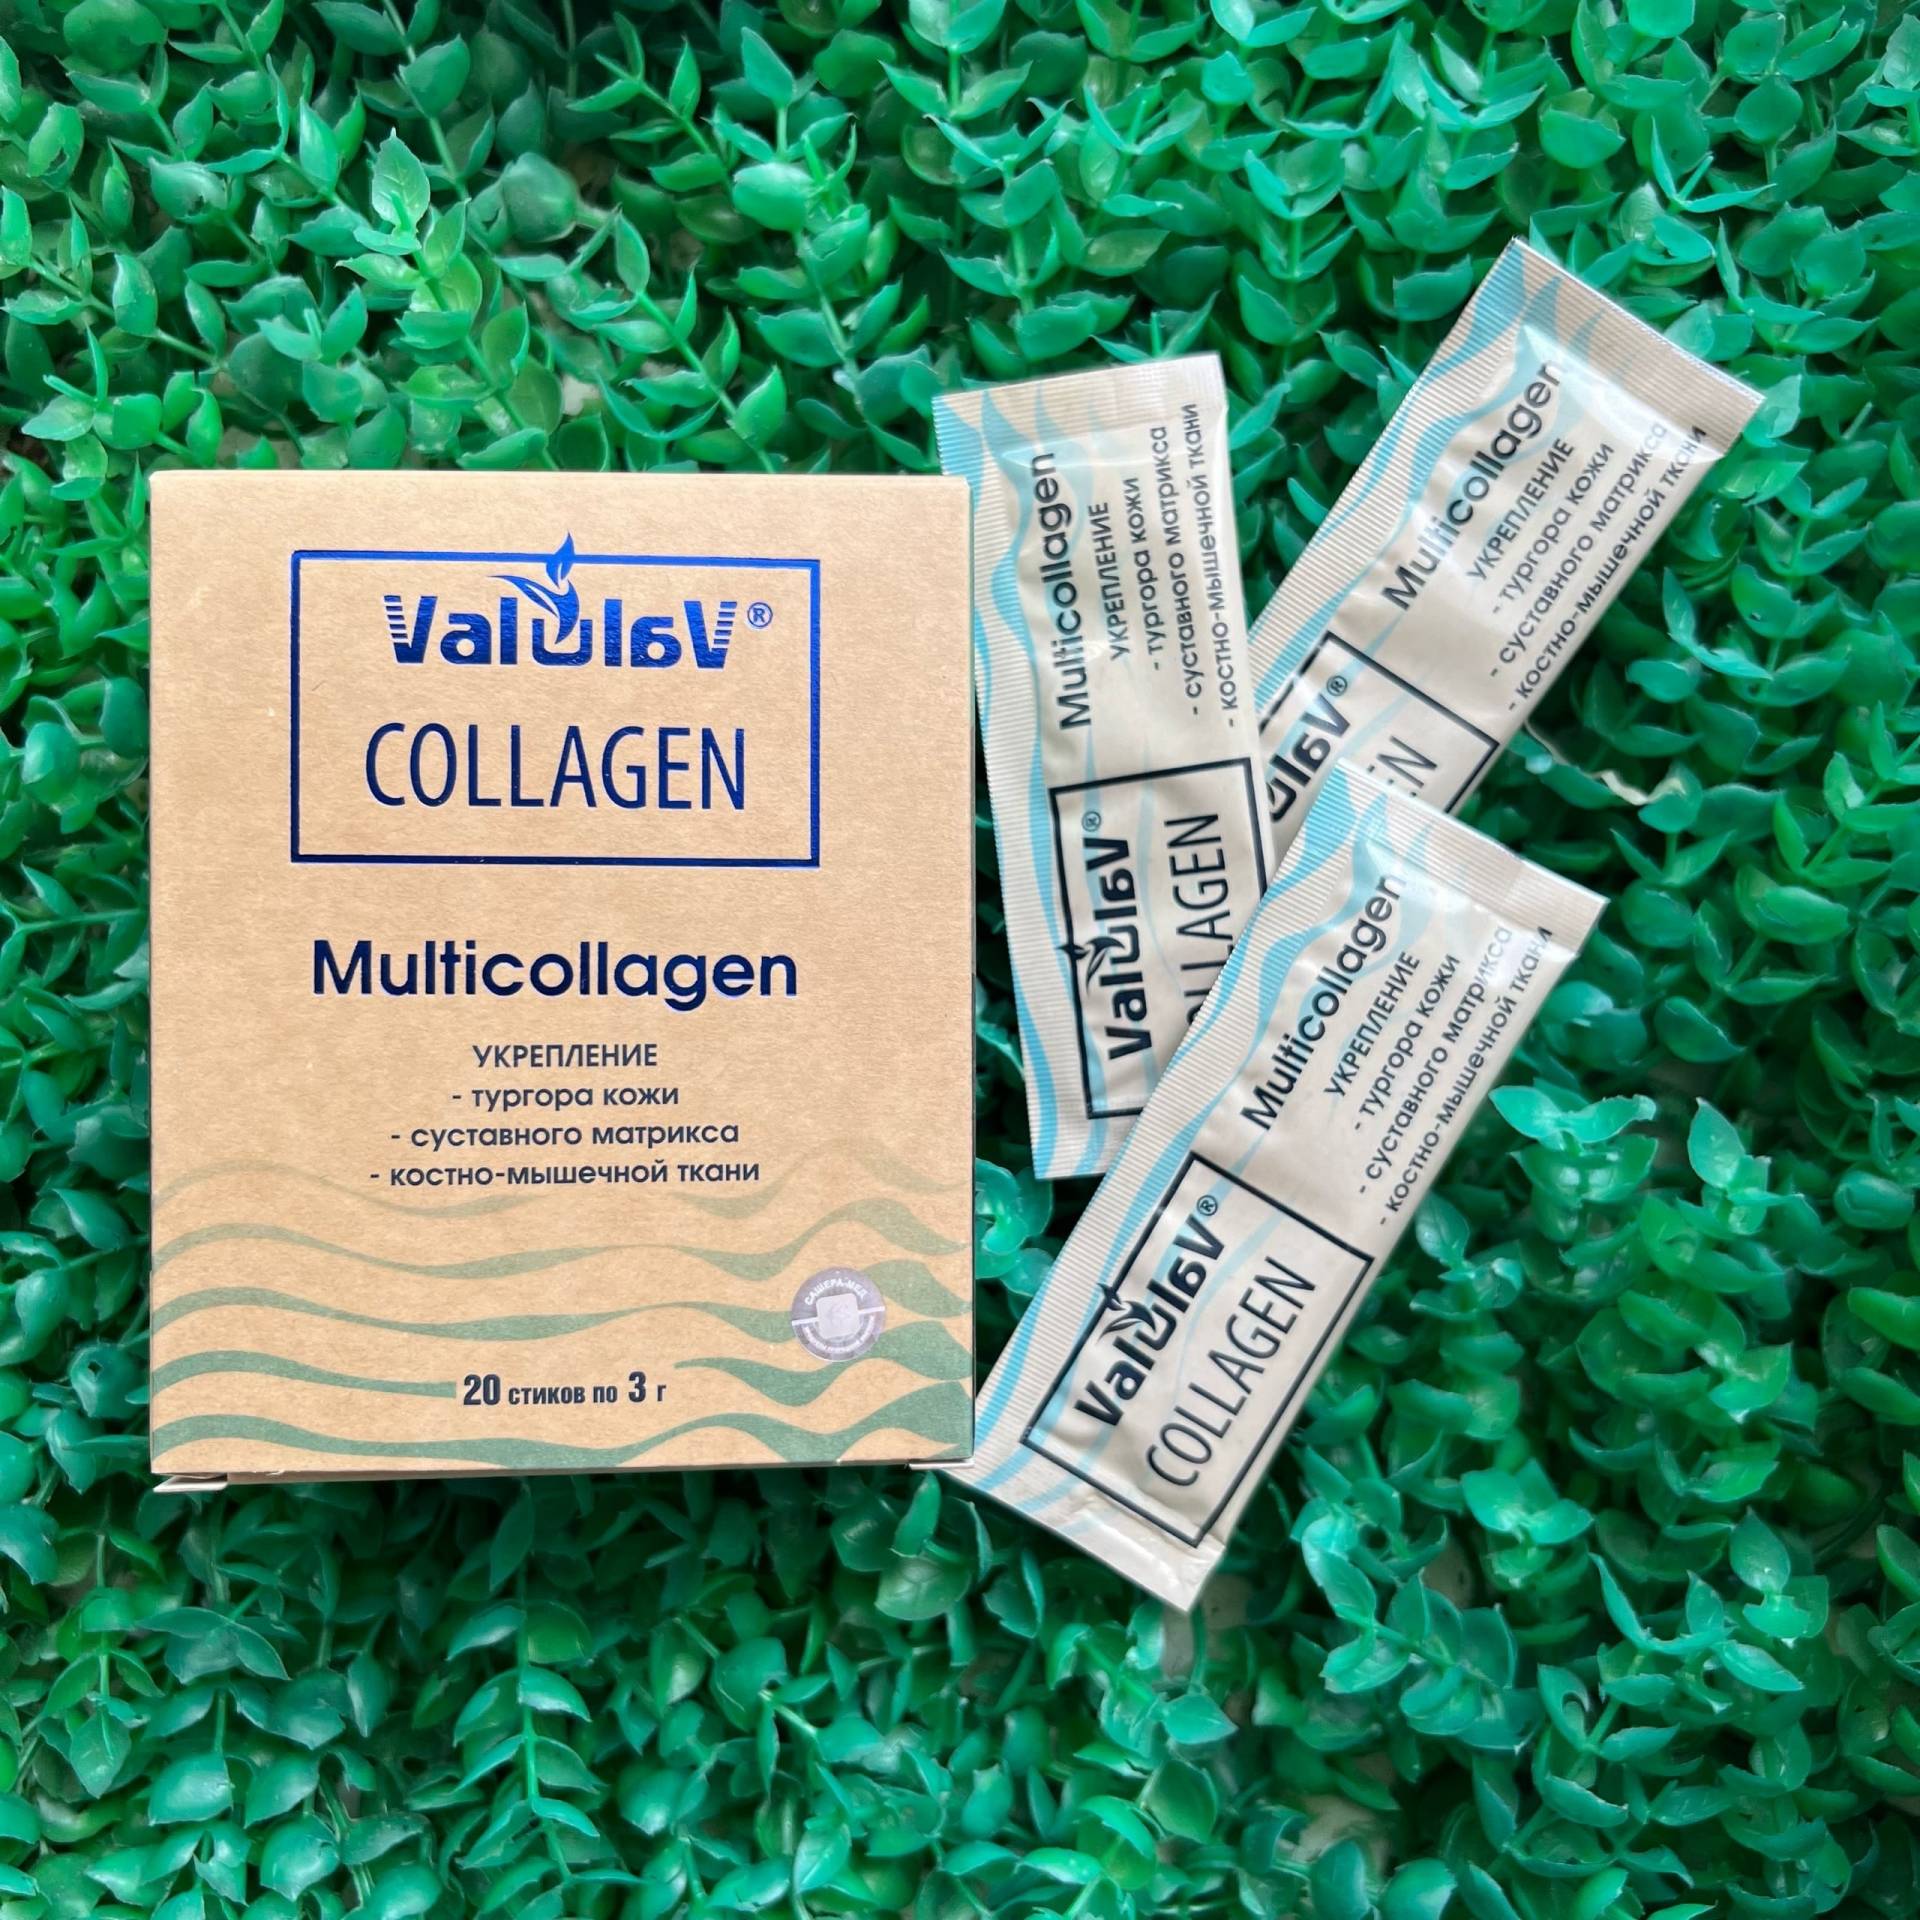 Valulav Collagen Мультиколлаген, 20 стиков. Стики с коллагеном. Коллаген в стиках купить. Коллаген 20 стиков